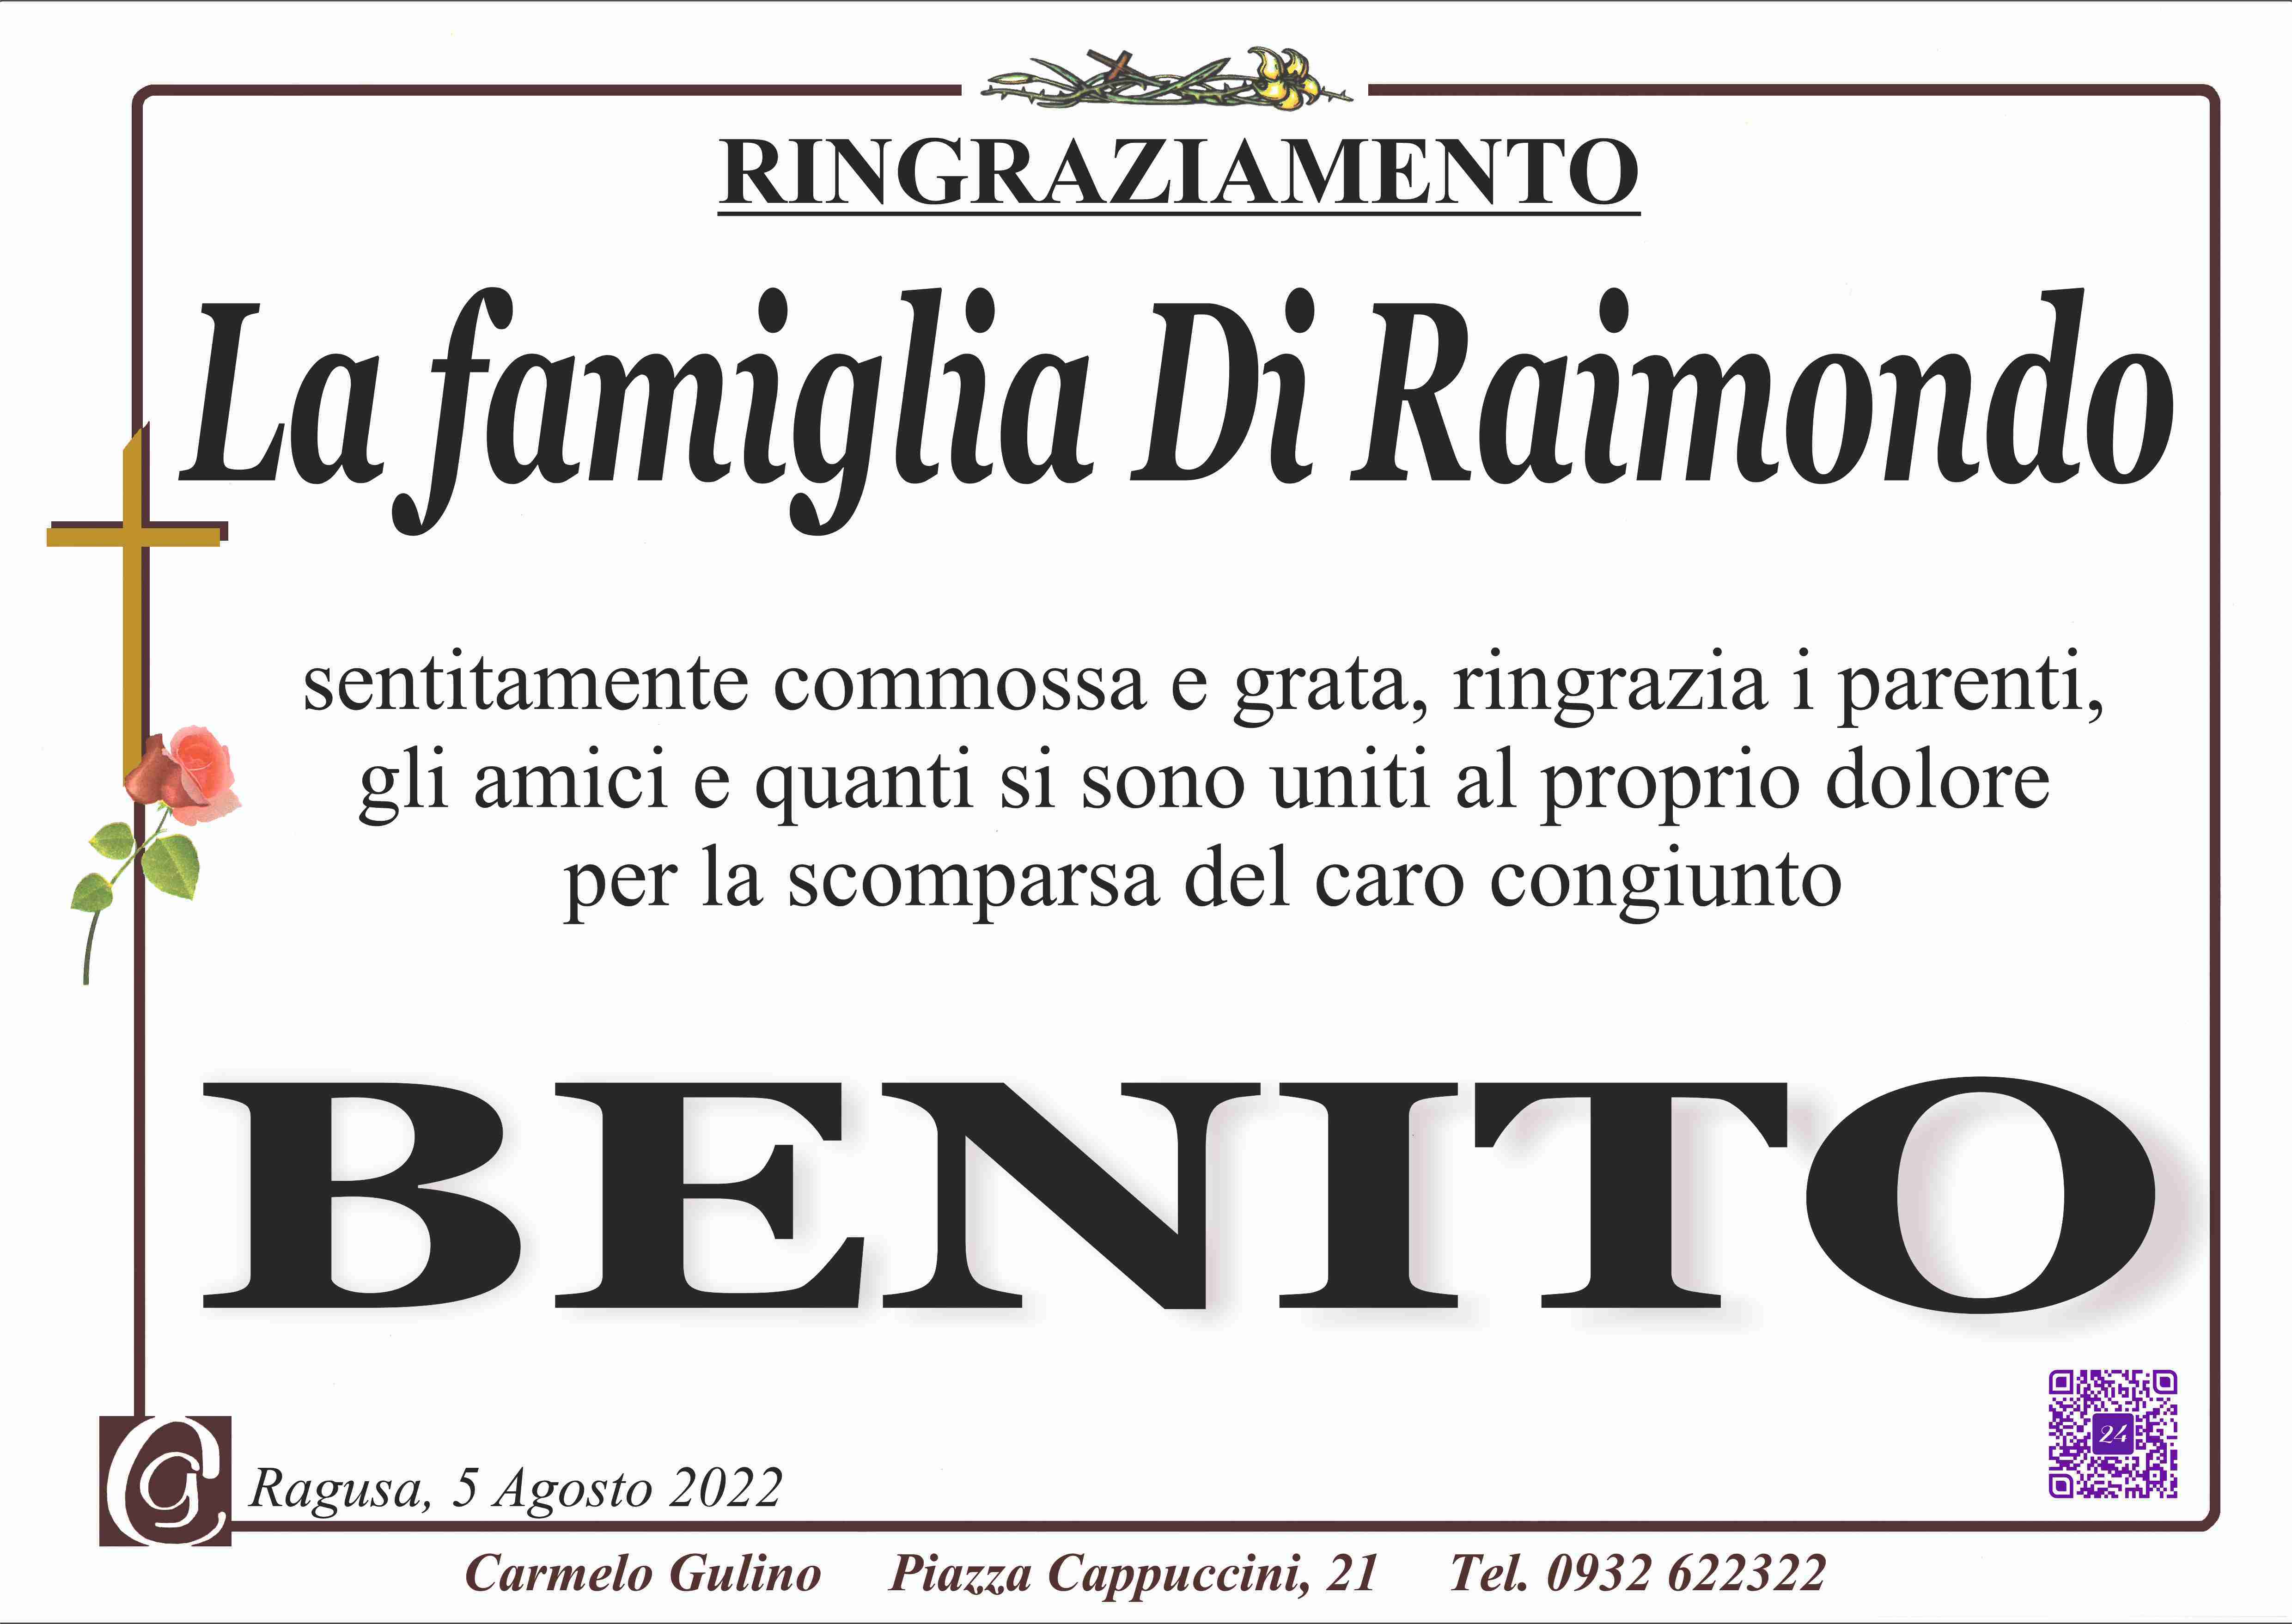 Benito Di Raimondo